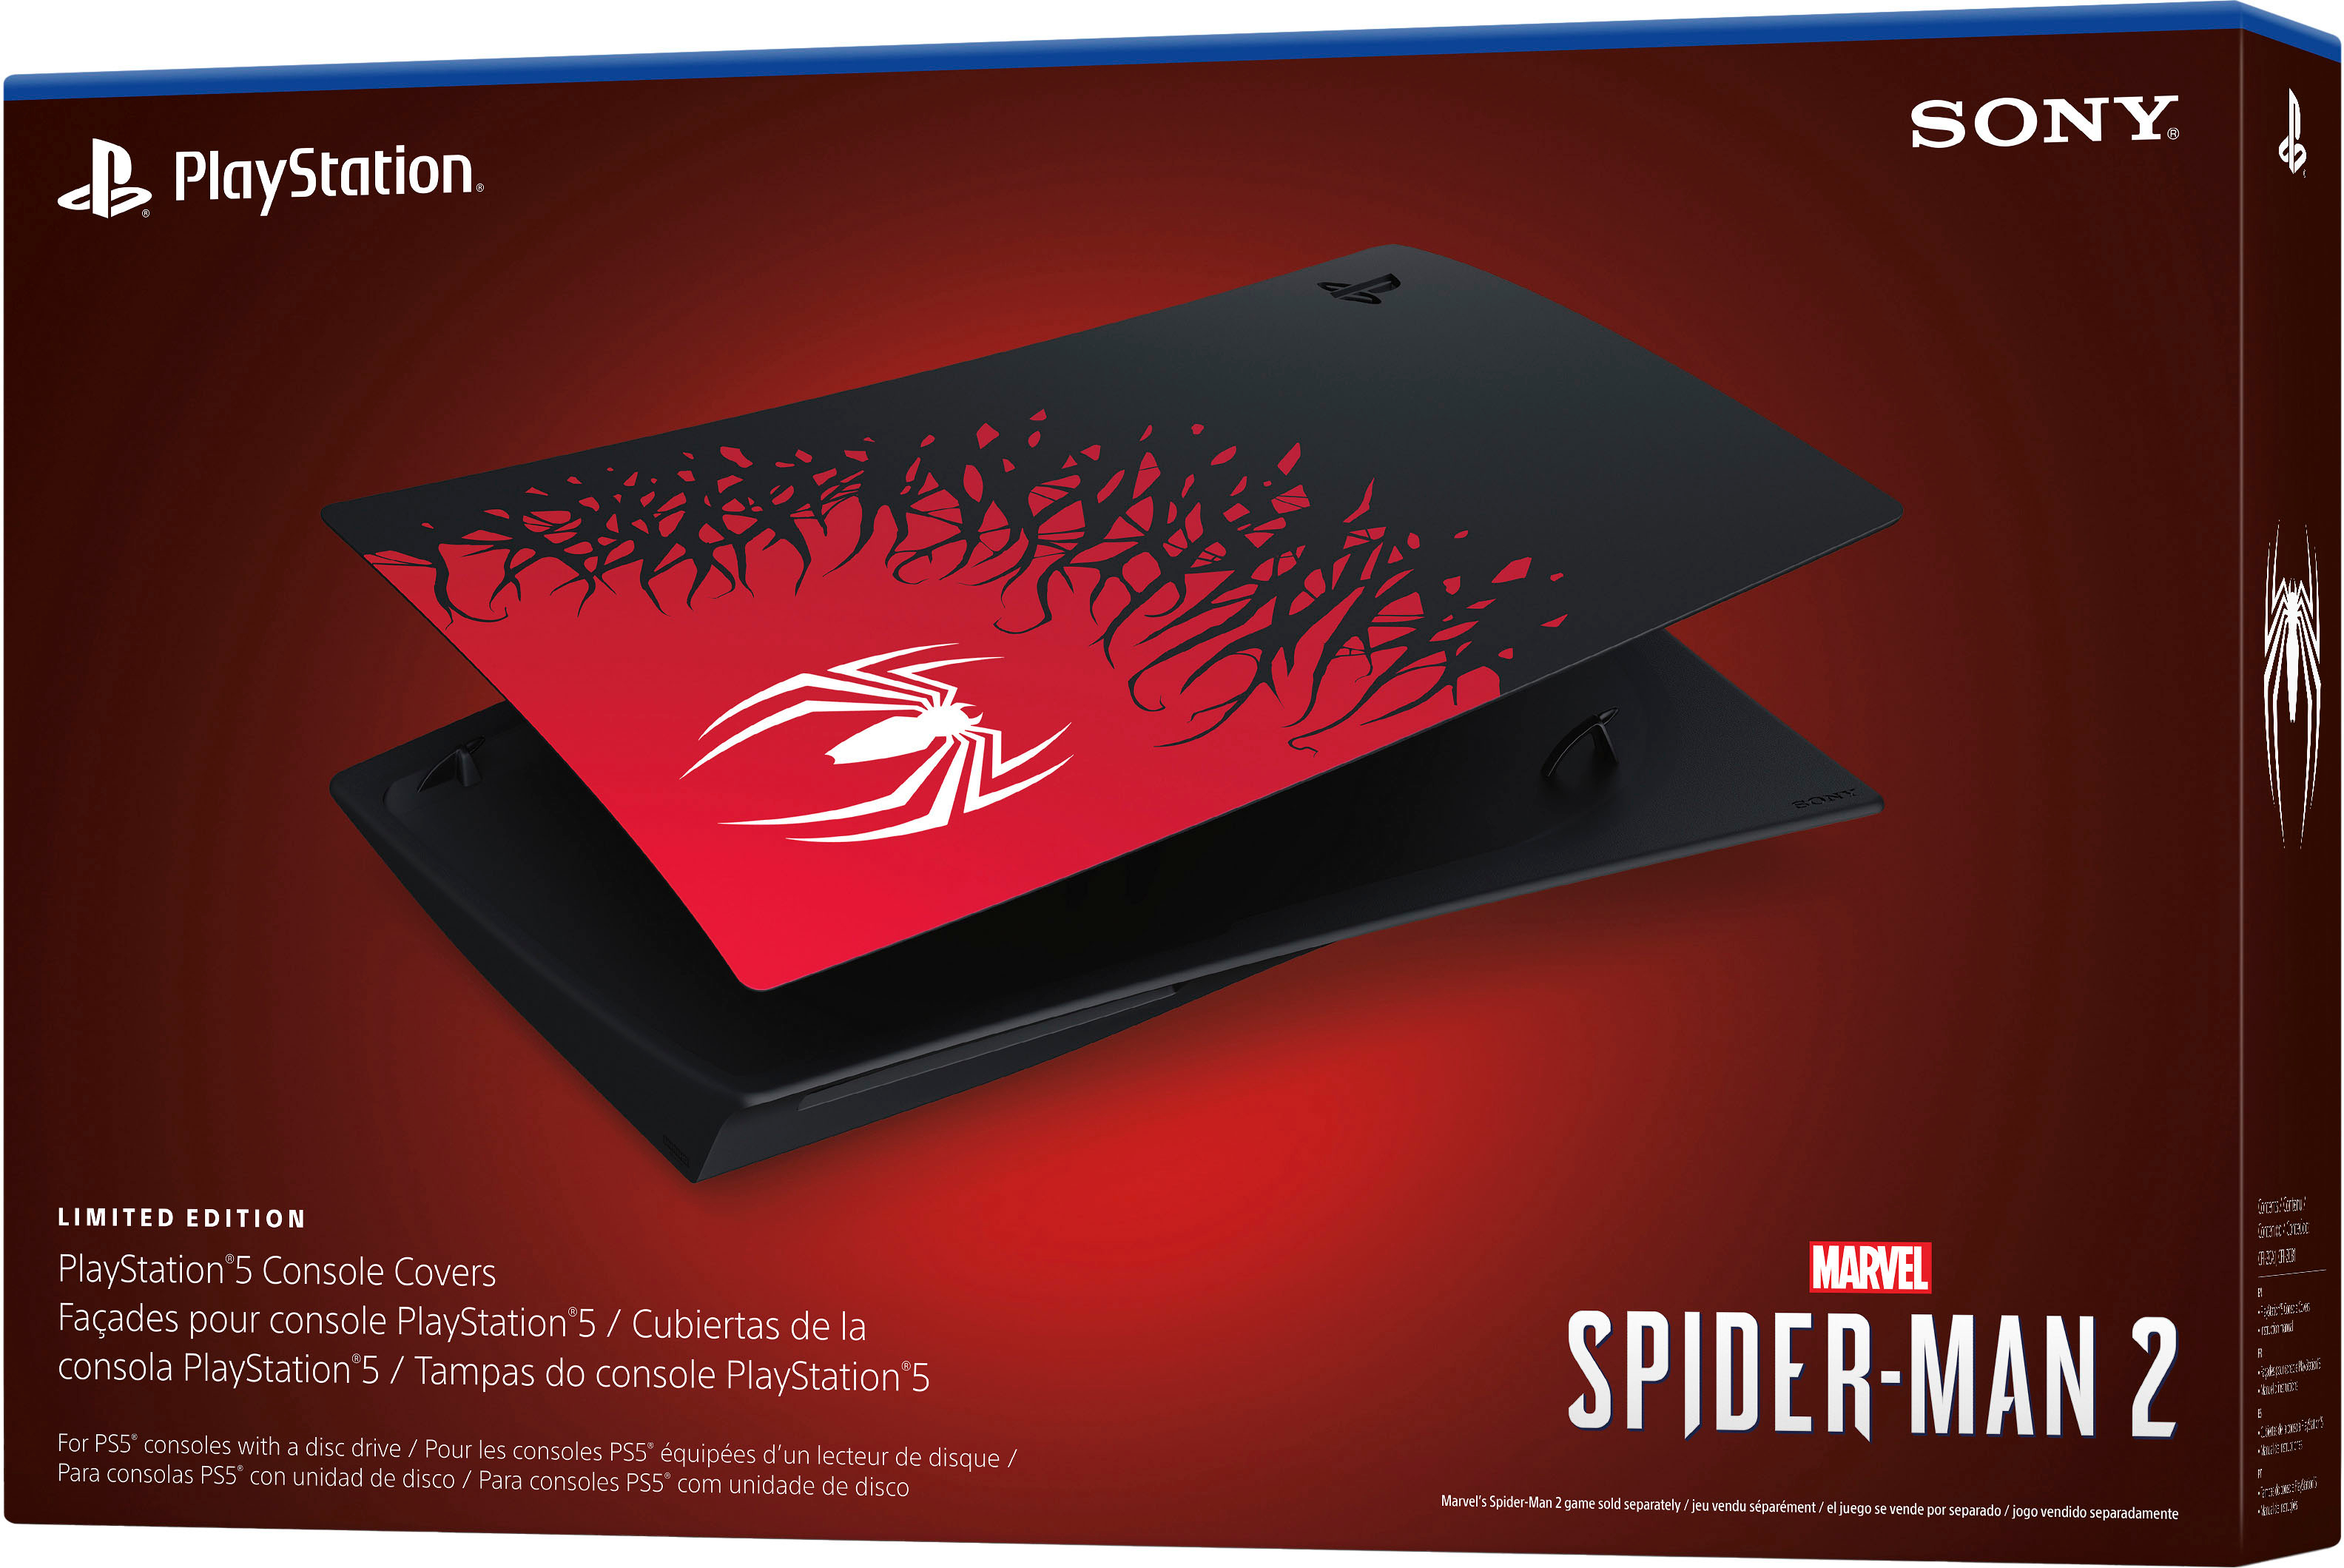 PLAYSTATION 5 (PS5) SLIM Edicion Disco - SpiderMan 2